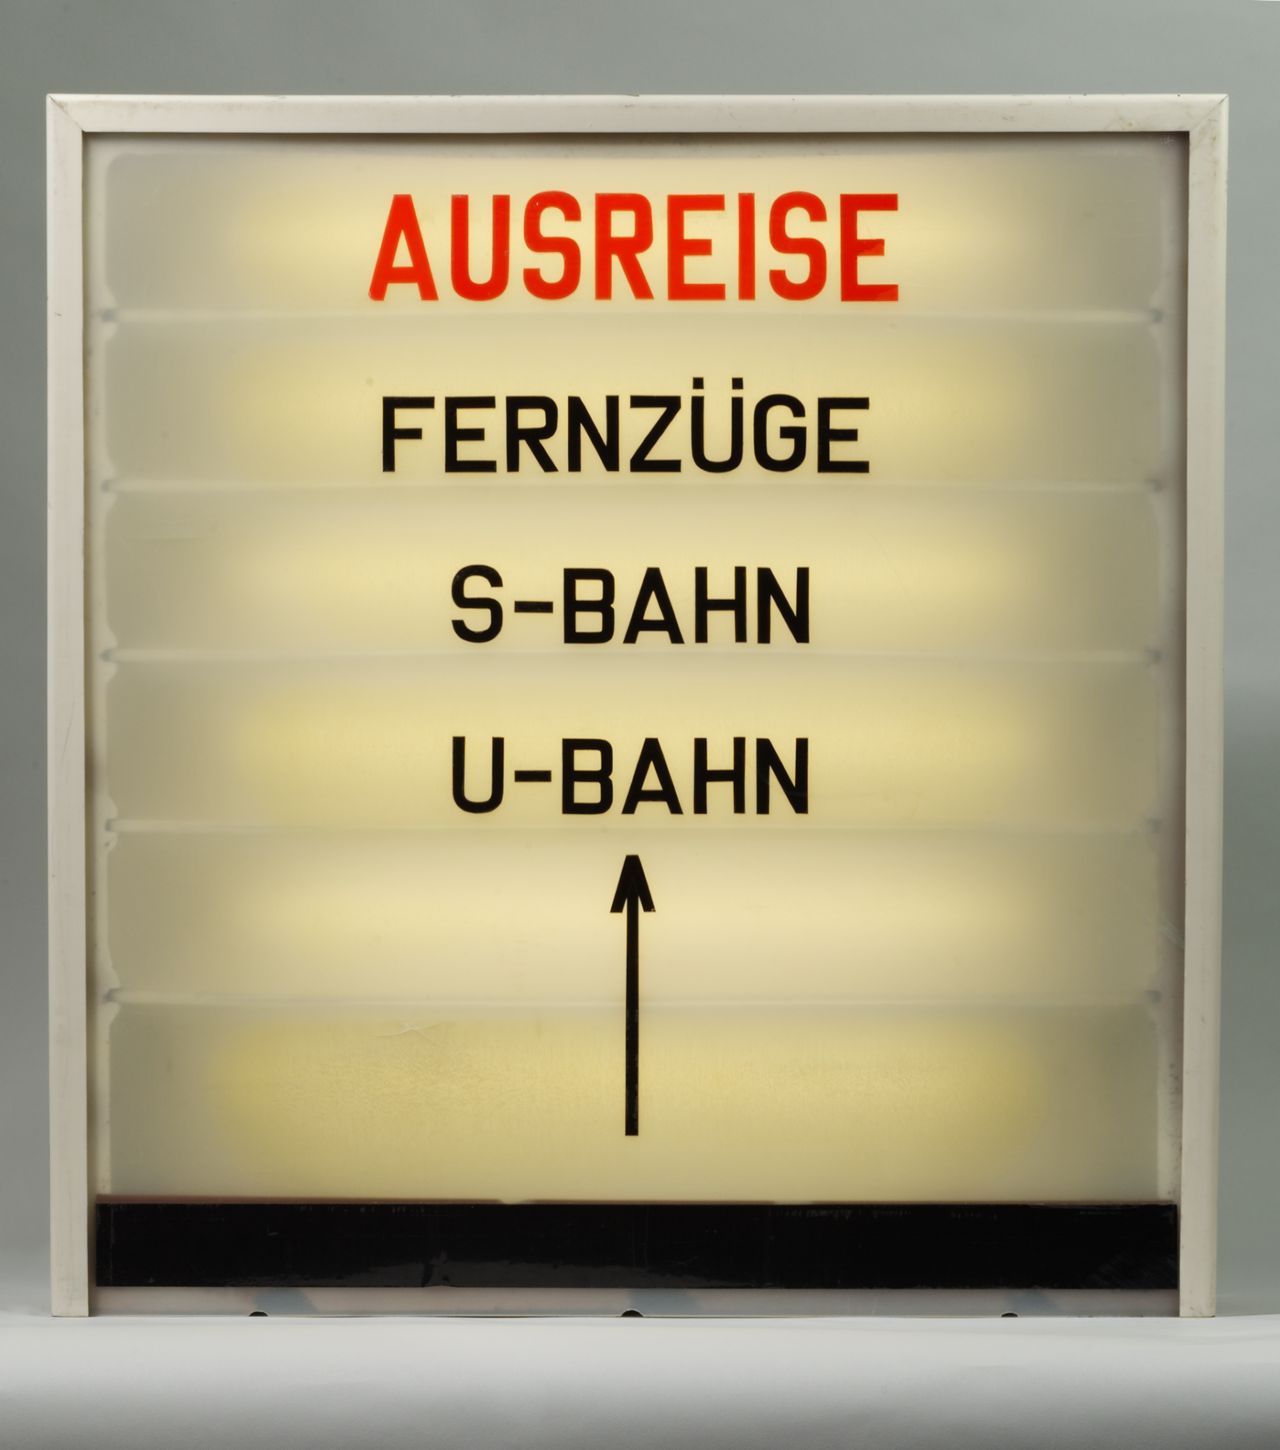 Trübes Kunststoffschild mit rot-schwarzem Text: Ausreise / Fernzüge / S-Bahn / U-Bahn. Darunter Pfeil nach oben.